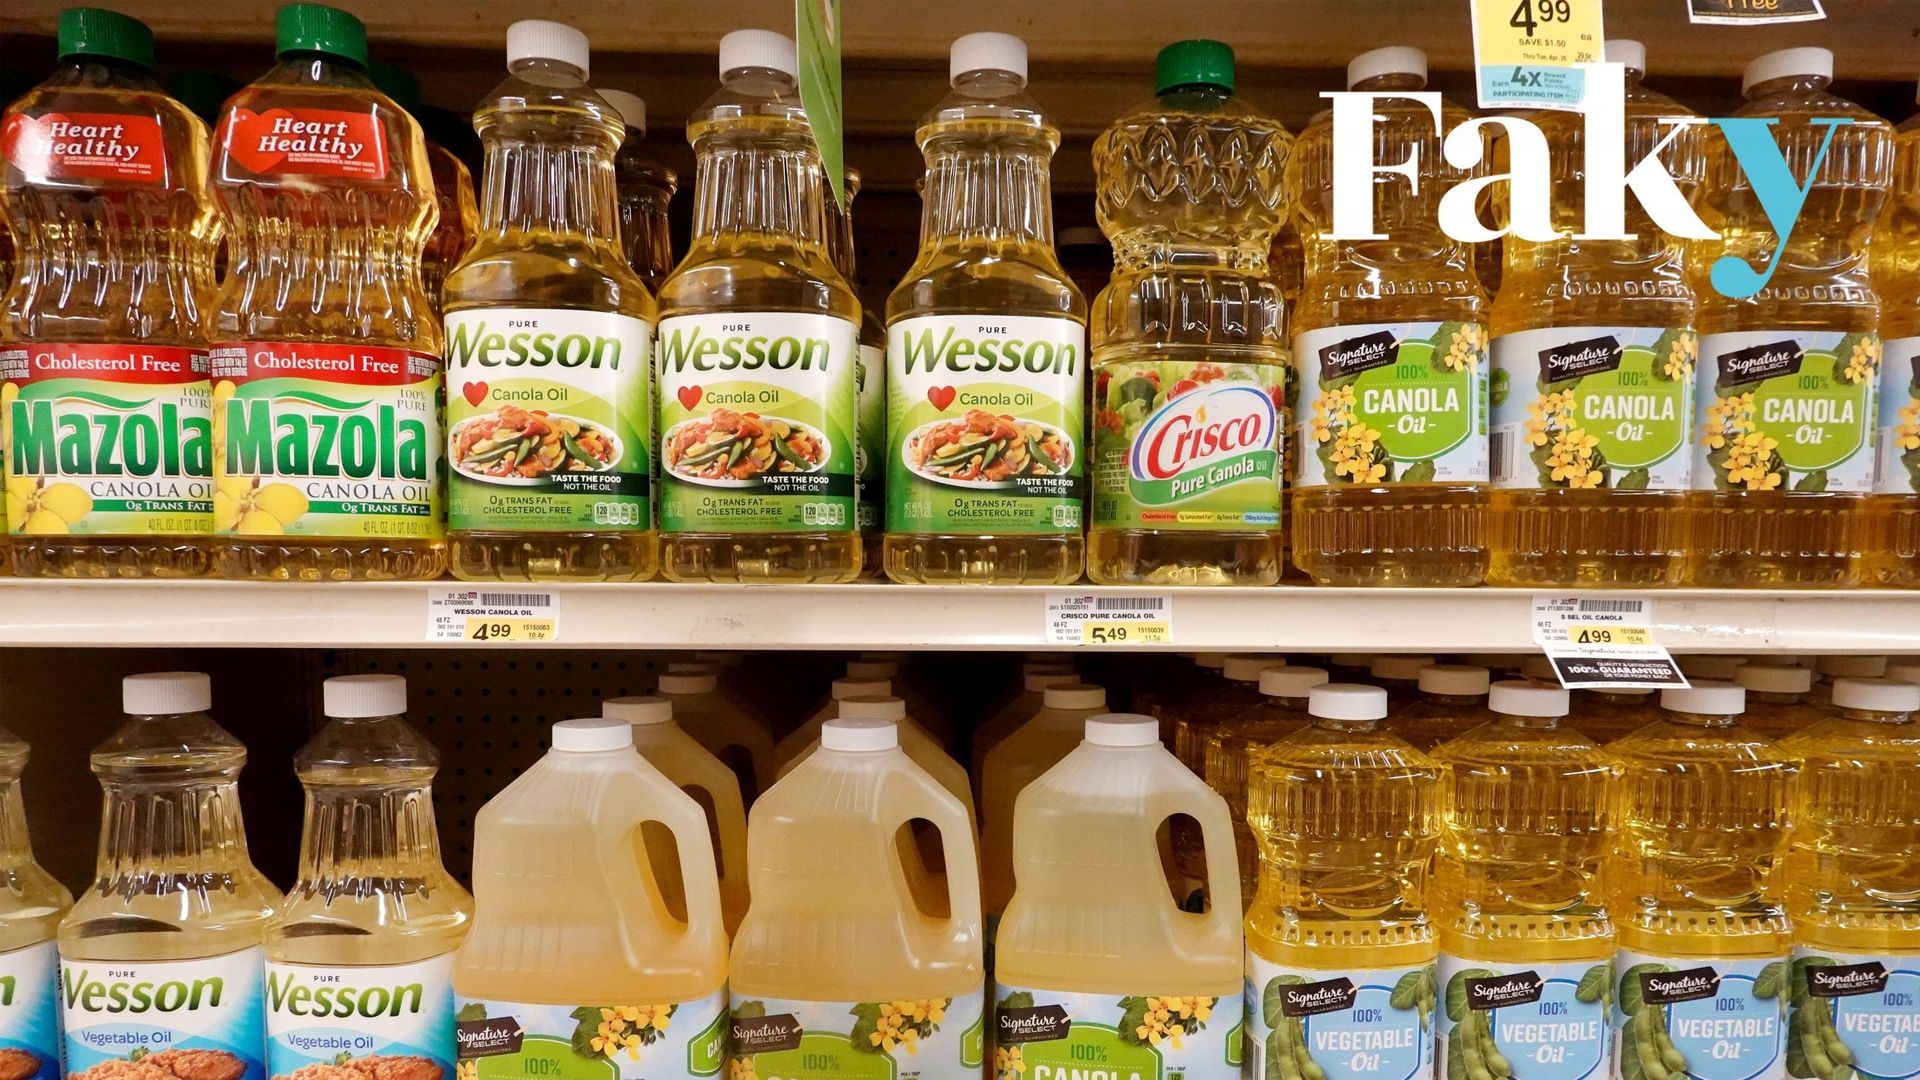 Image d’illustration de bidons d’huile dans un supermarché.